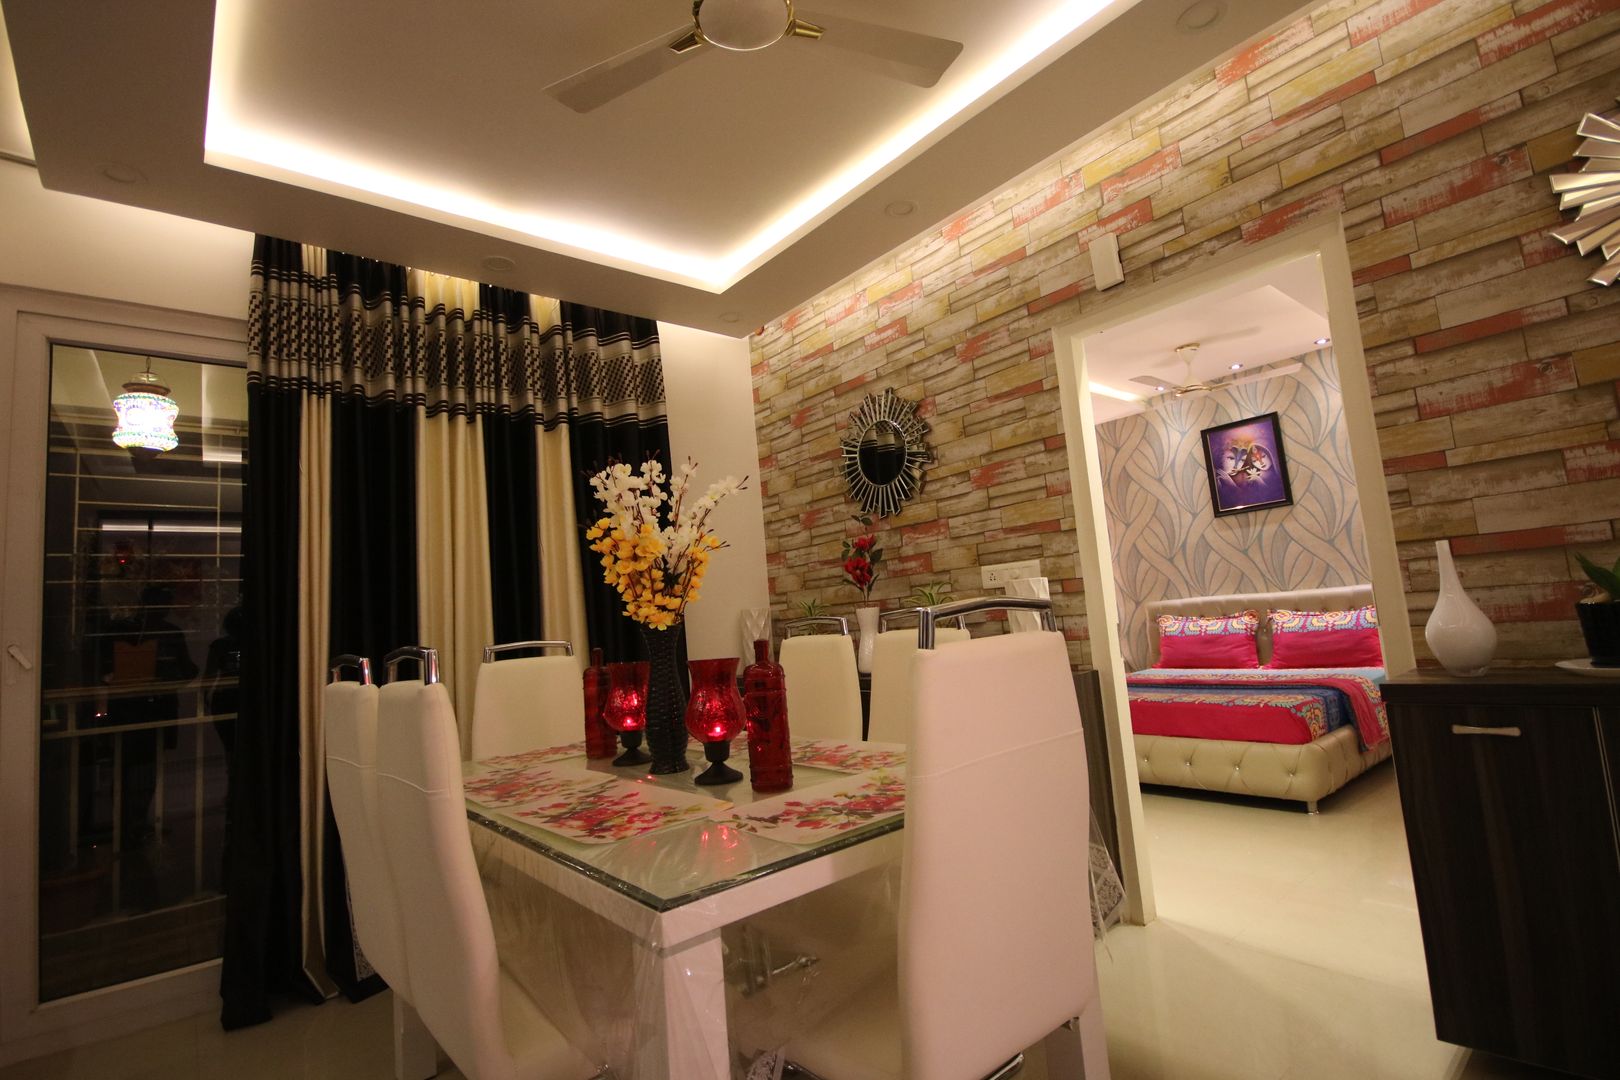 Mr Shiva Nadh Reddy | 2BHK | Bangalore | Full Furnished Home, Enrich Interiors & Decors Enrich Interiors & Decors Phòng ăn phong cách châu Á